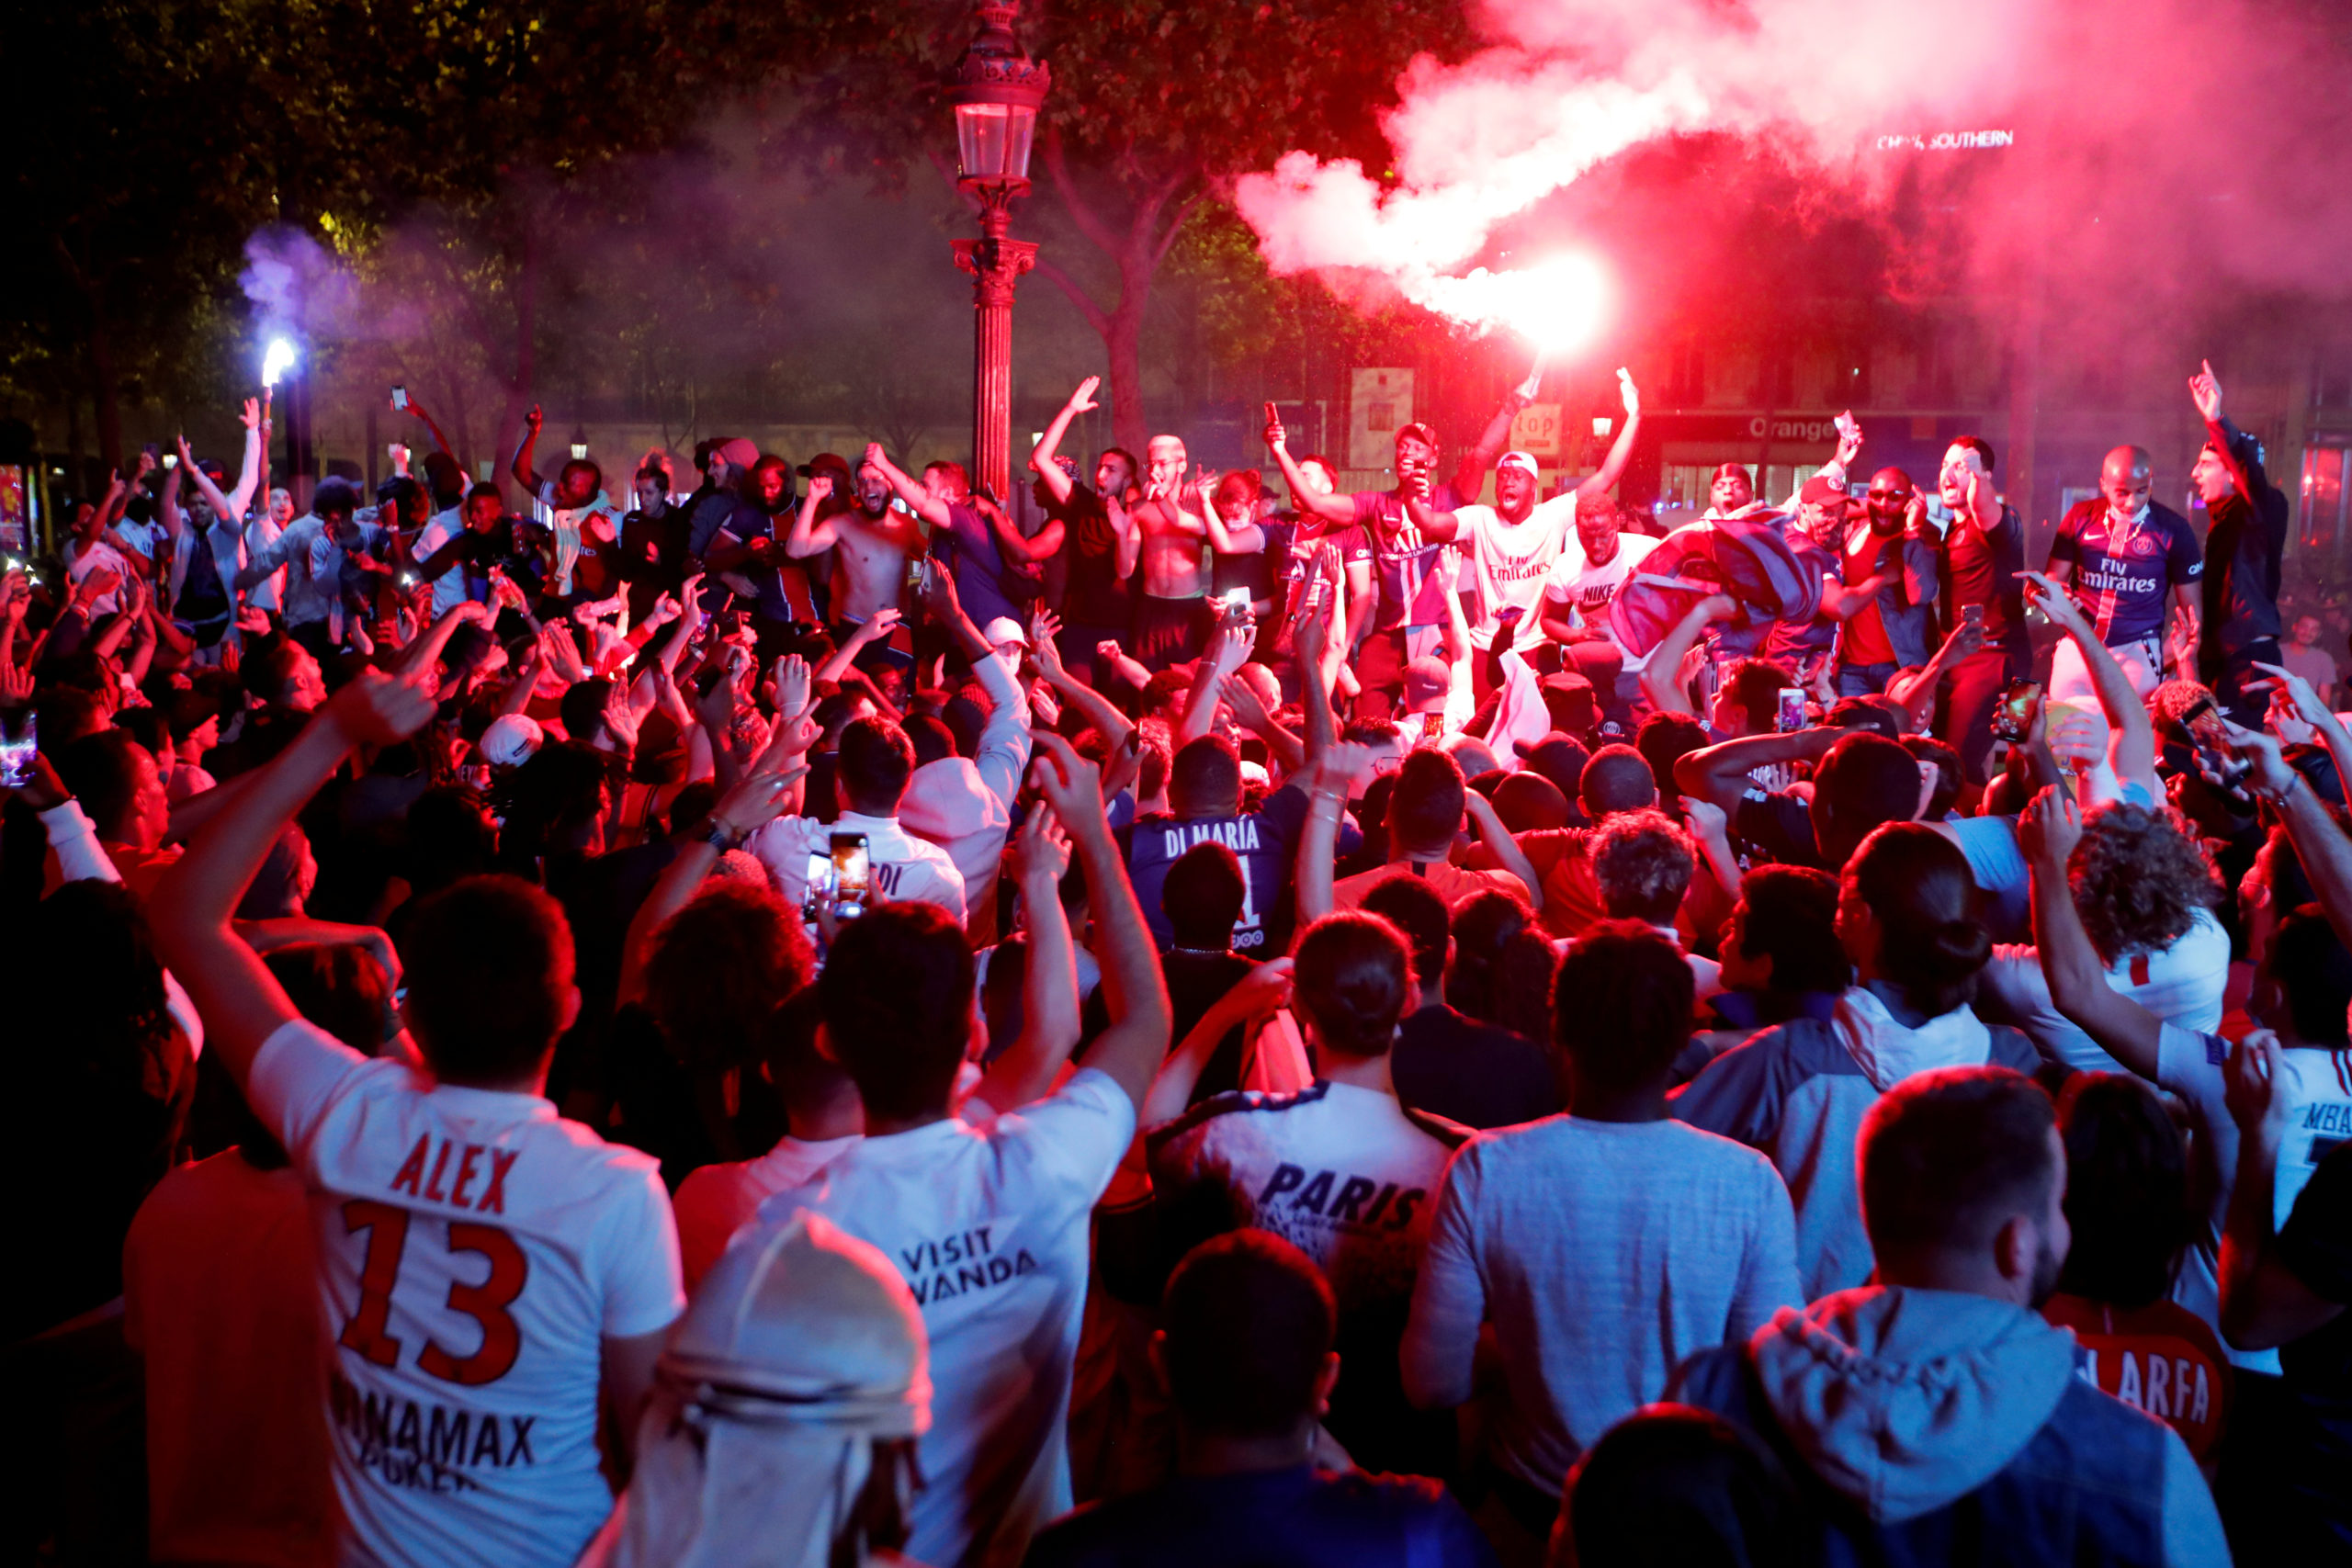 Le Paris Saint-Germain (PSG) qualifié pour la finale de la Ligue des champions de football